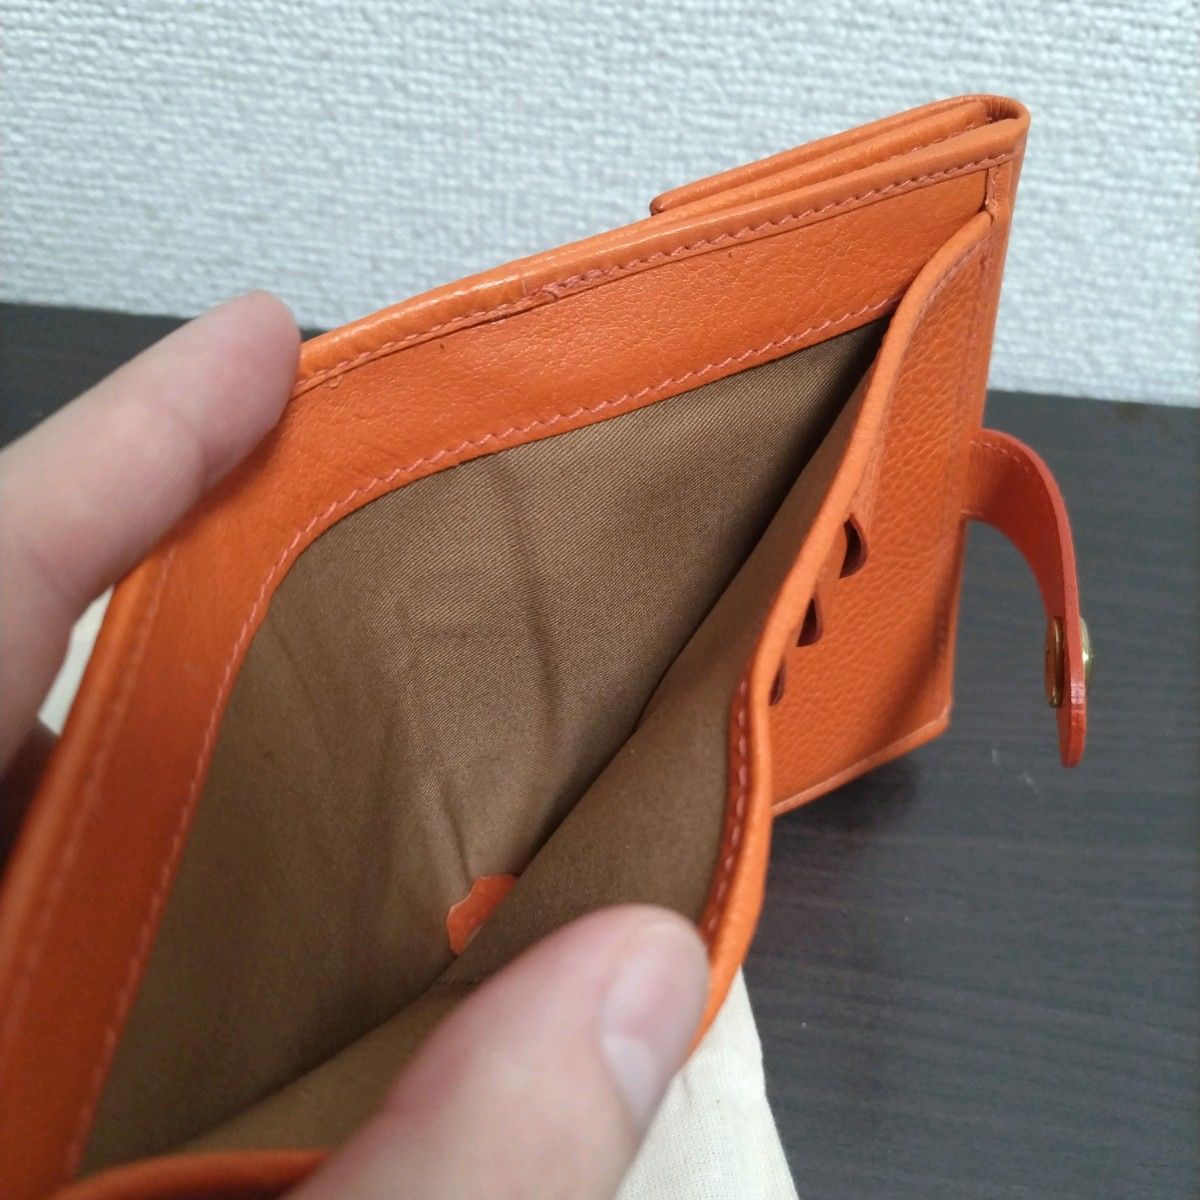 新品 イルビゾンテ 本革 レザー 財布 スナップ ウォレット オレンジ